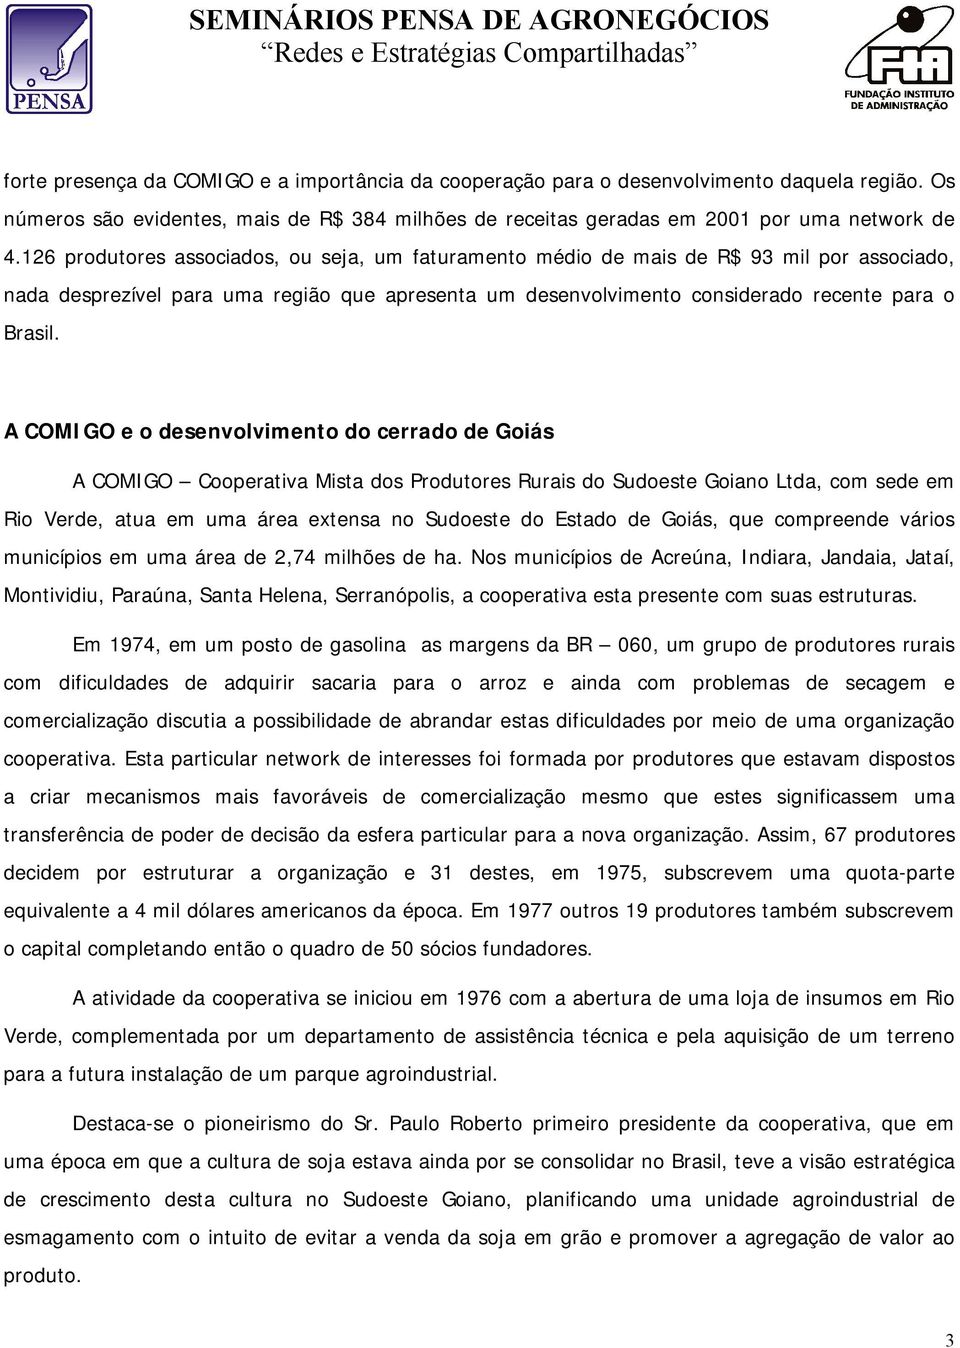 A COMIGO e o desenvolvimento do cerrado de Goiás A COMIGO Cooperativa Mista dos Produtores Rurais do Sudoeste Goiano Ltda, com sede em Rio Verde, atua em uma área extensa no Sudoeste do Estado de